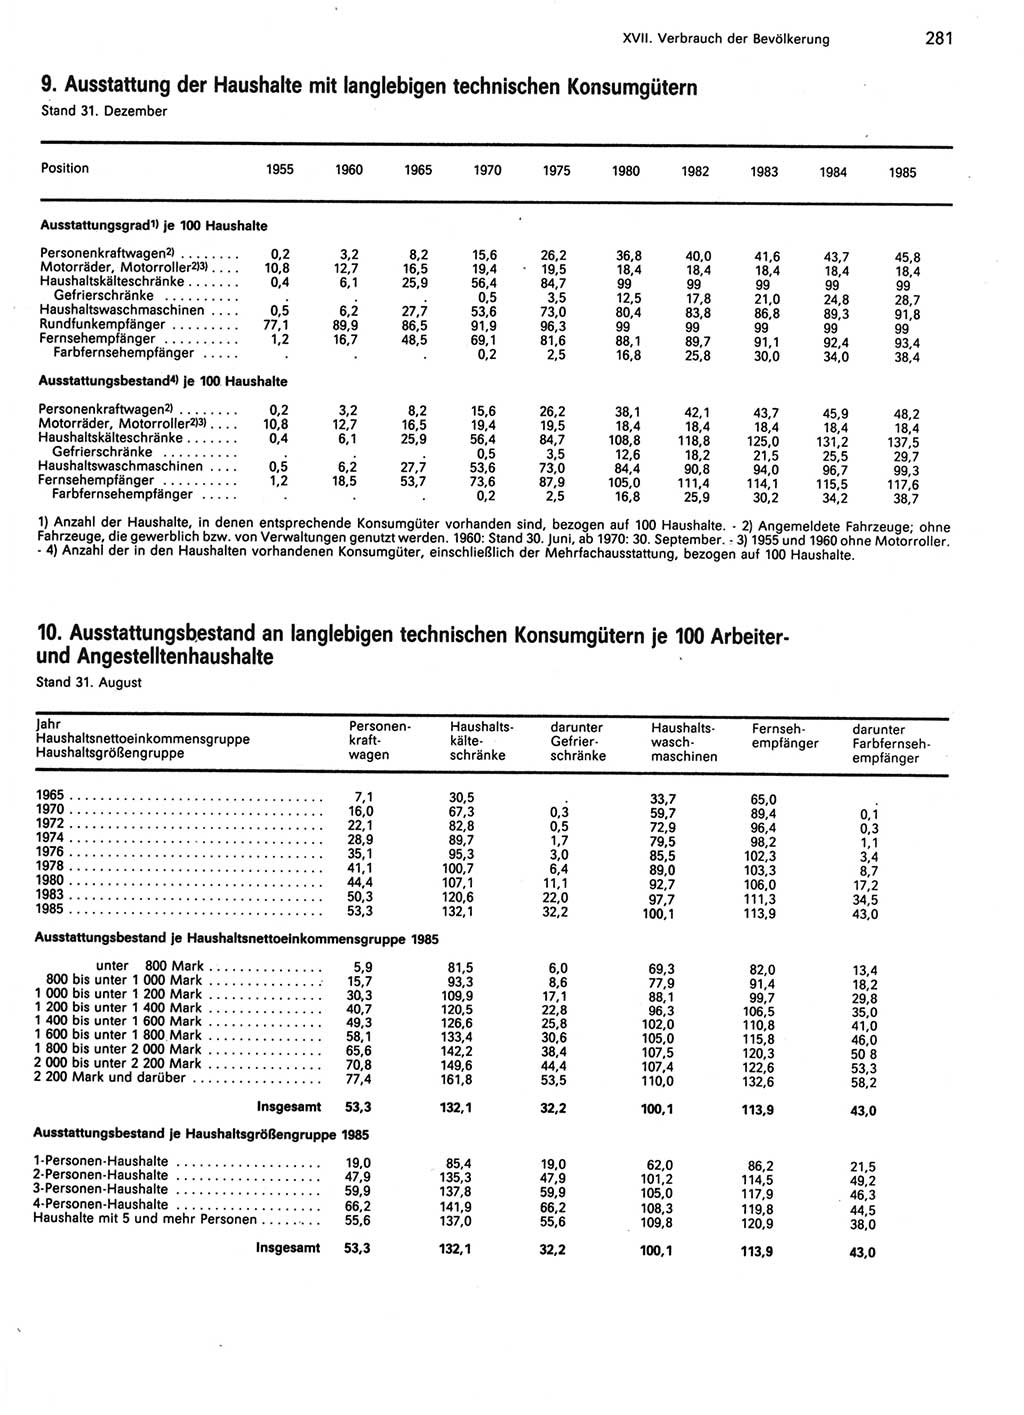 Statistisches Jahrbuch der Deutschen Demokratischen Republik (DDR) 1986, Seite 281 (Stat. Jb. DDR 1986, S. 281)